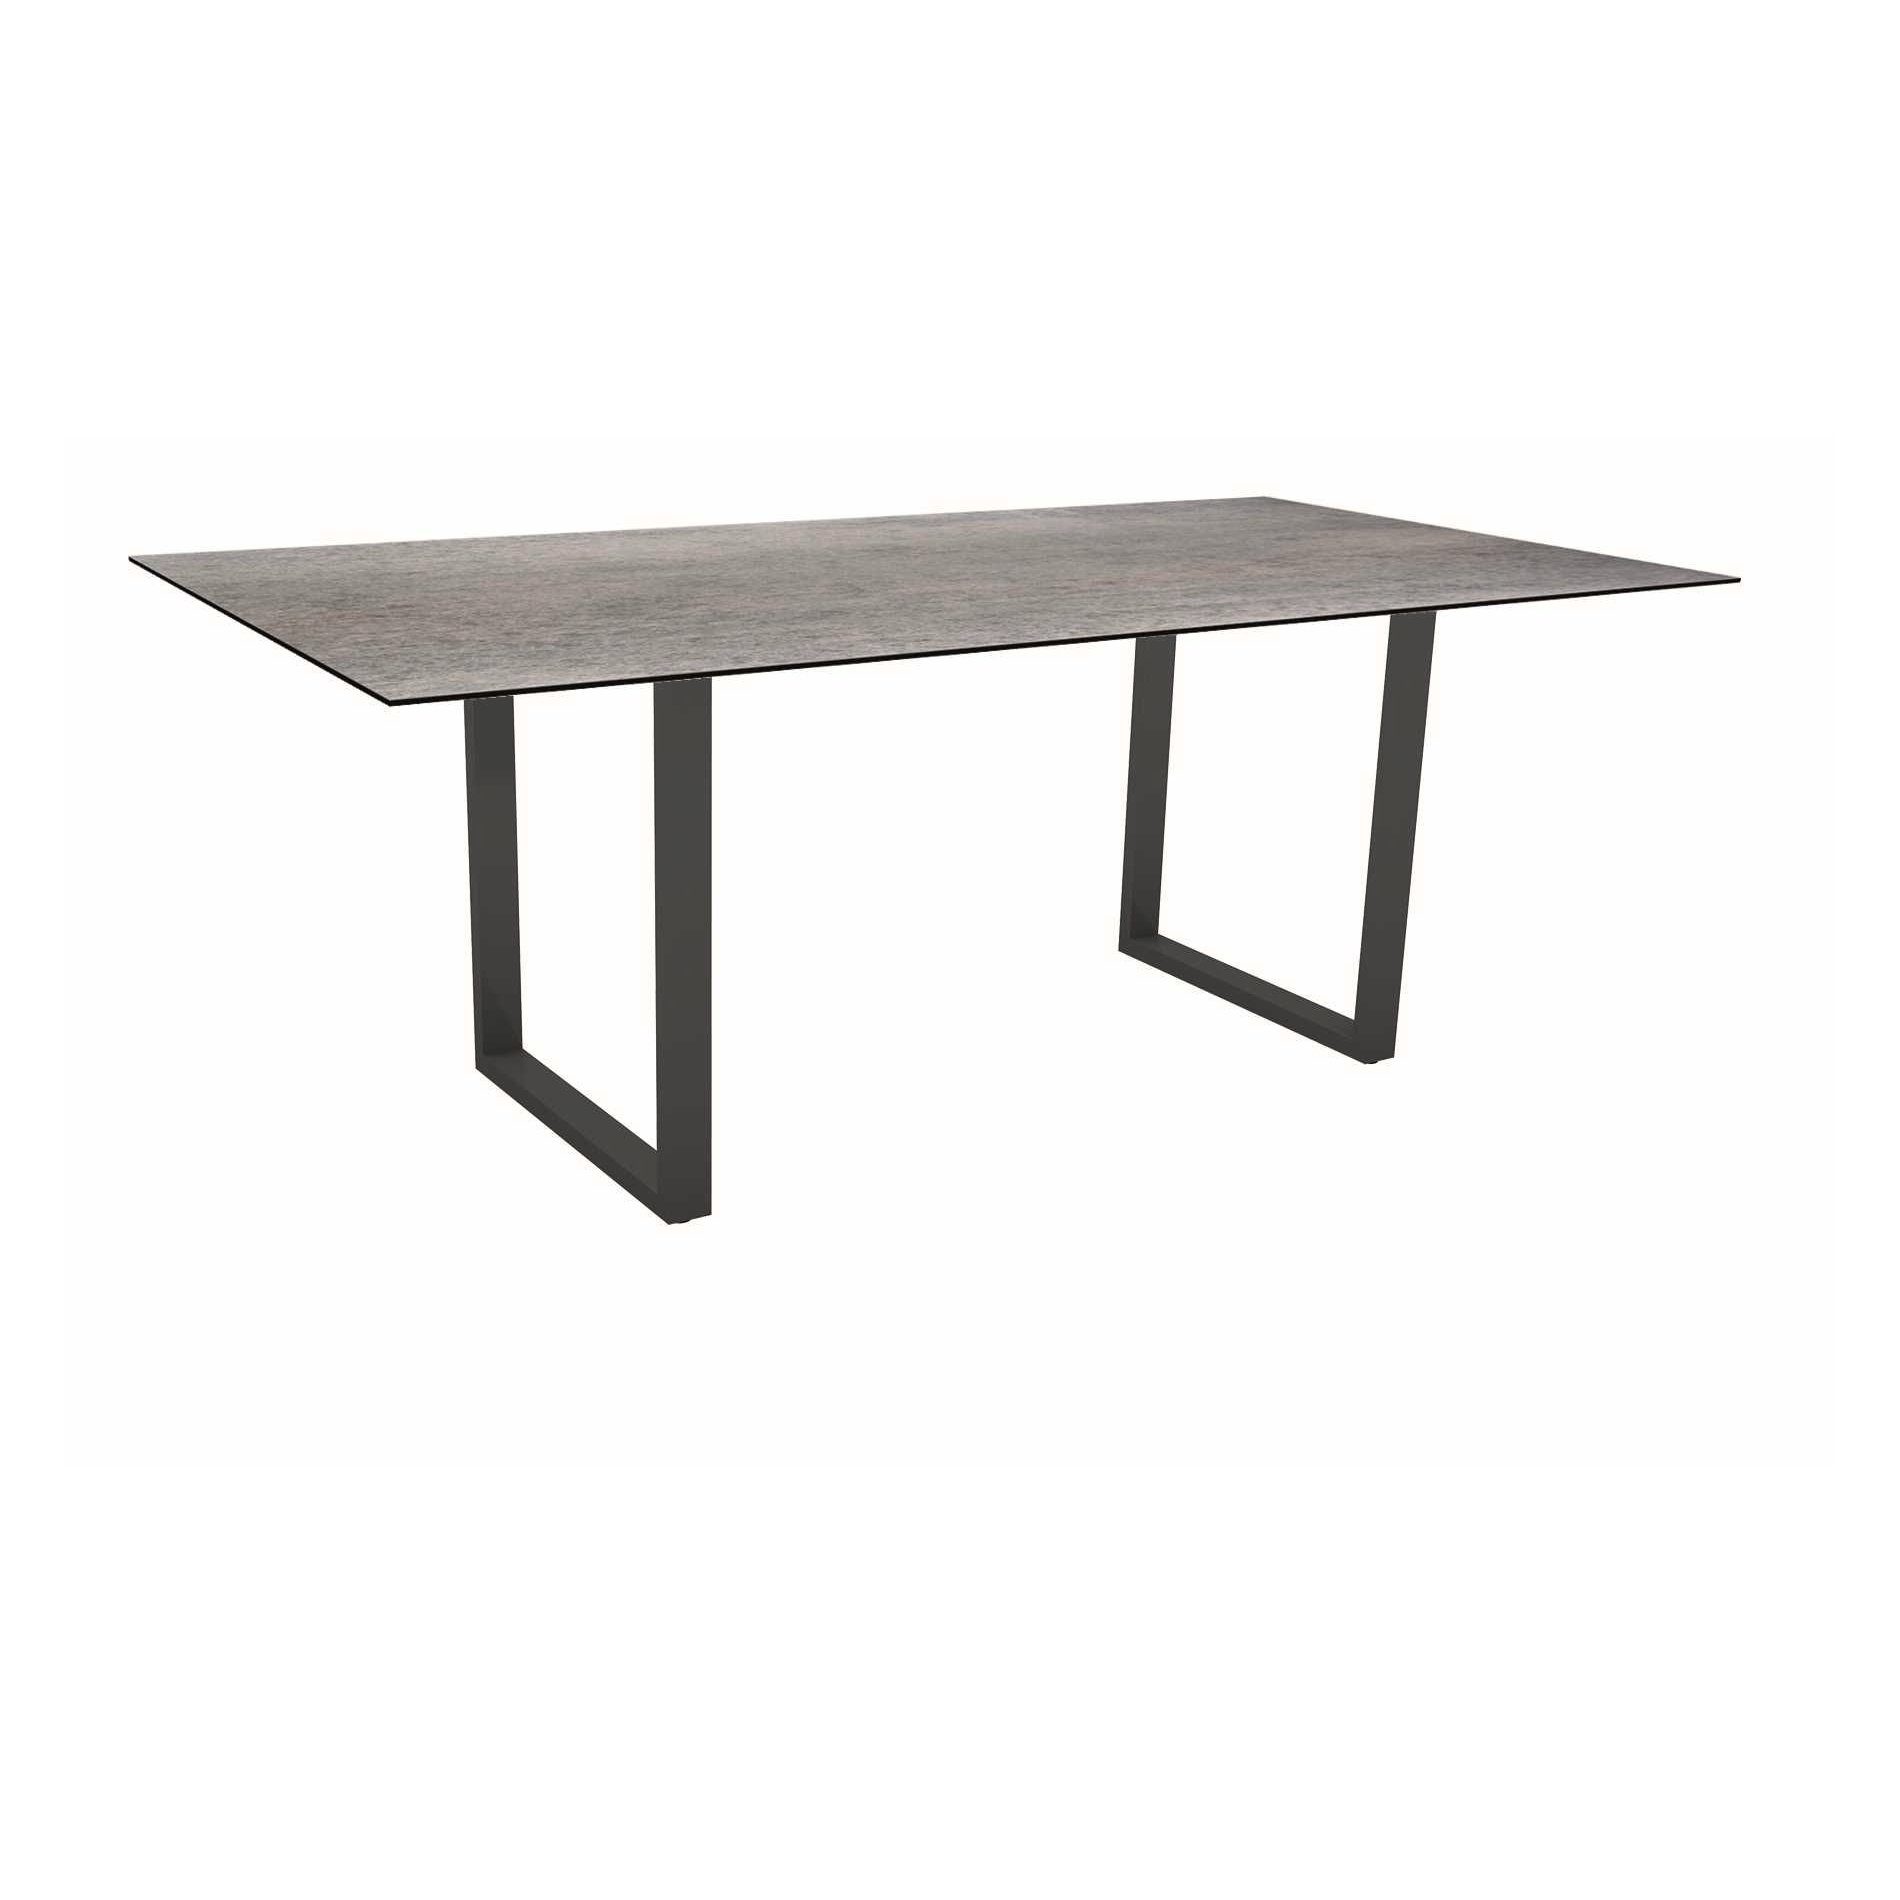 Stern Kufentisch, Maße: 200x100x73 cm, Gestell Aluminium anthrazit, Tischplatte HPL Smoky